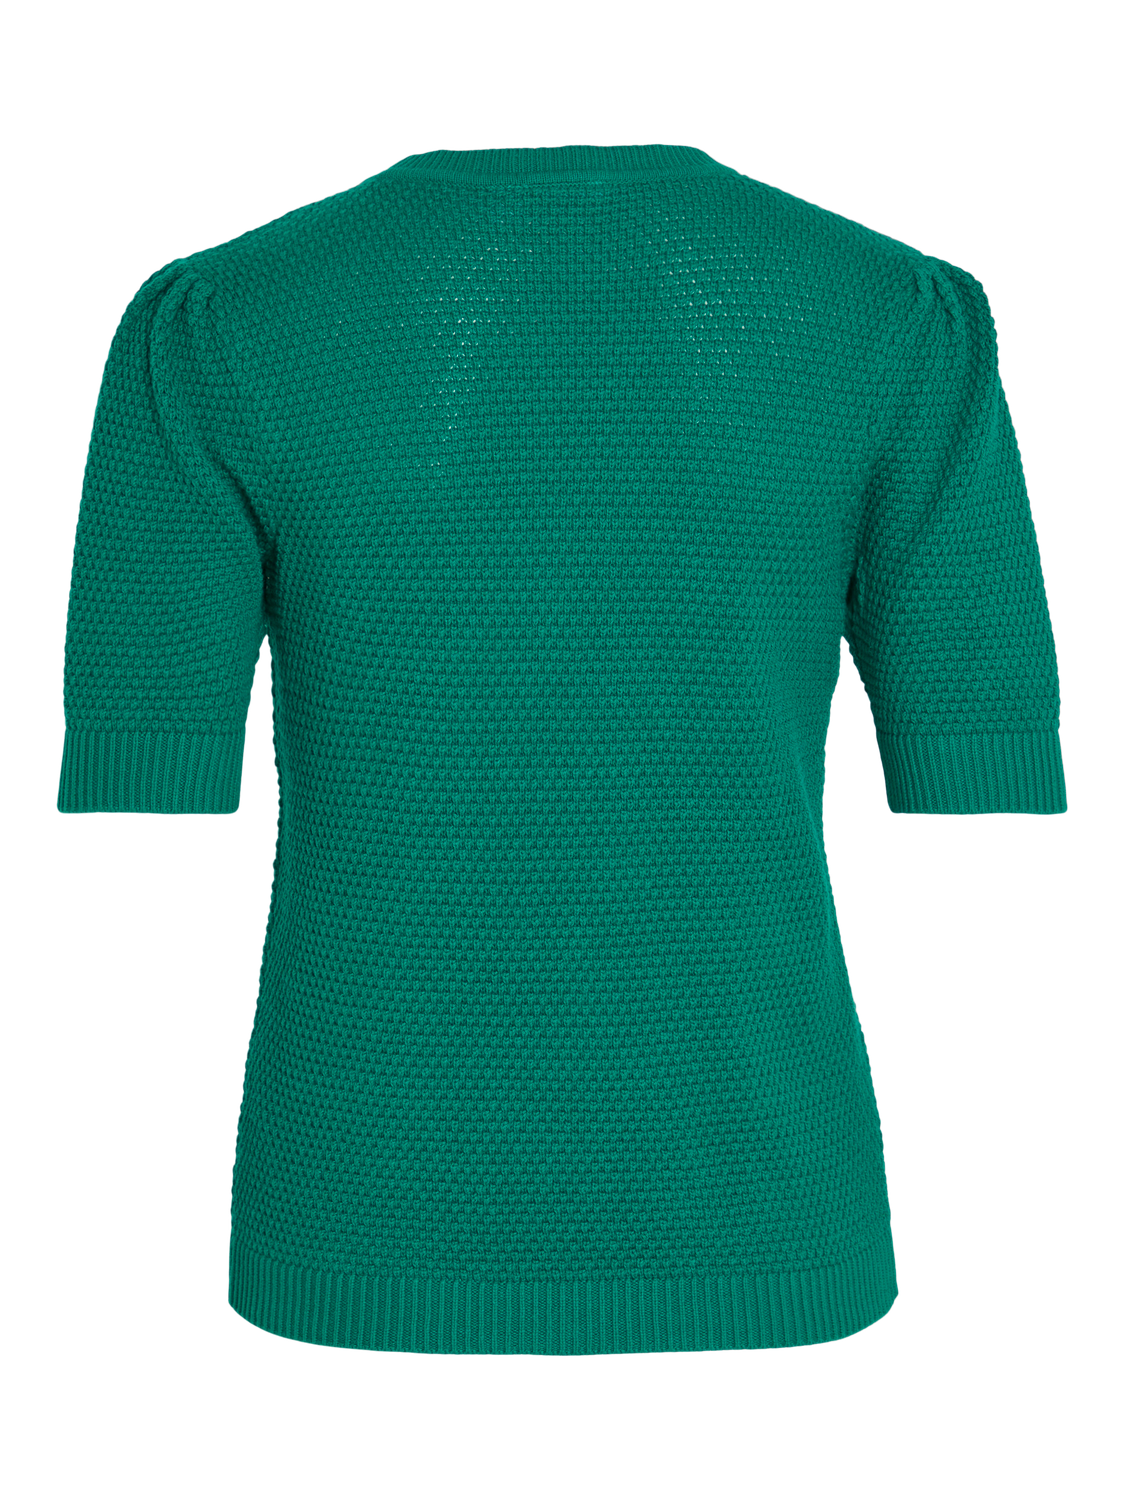 VIDALO Pullover - Ultramarine Green